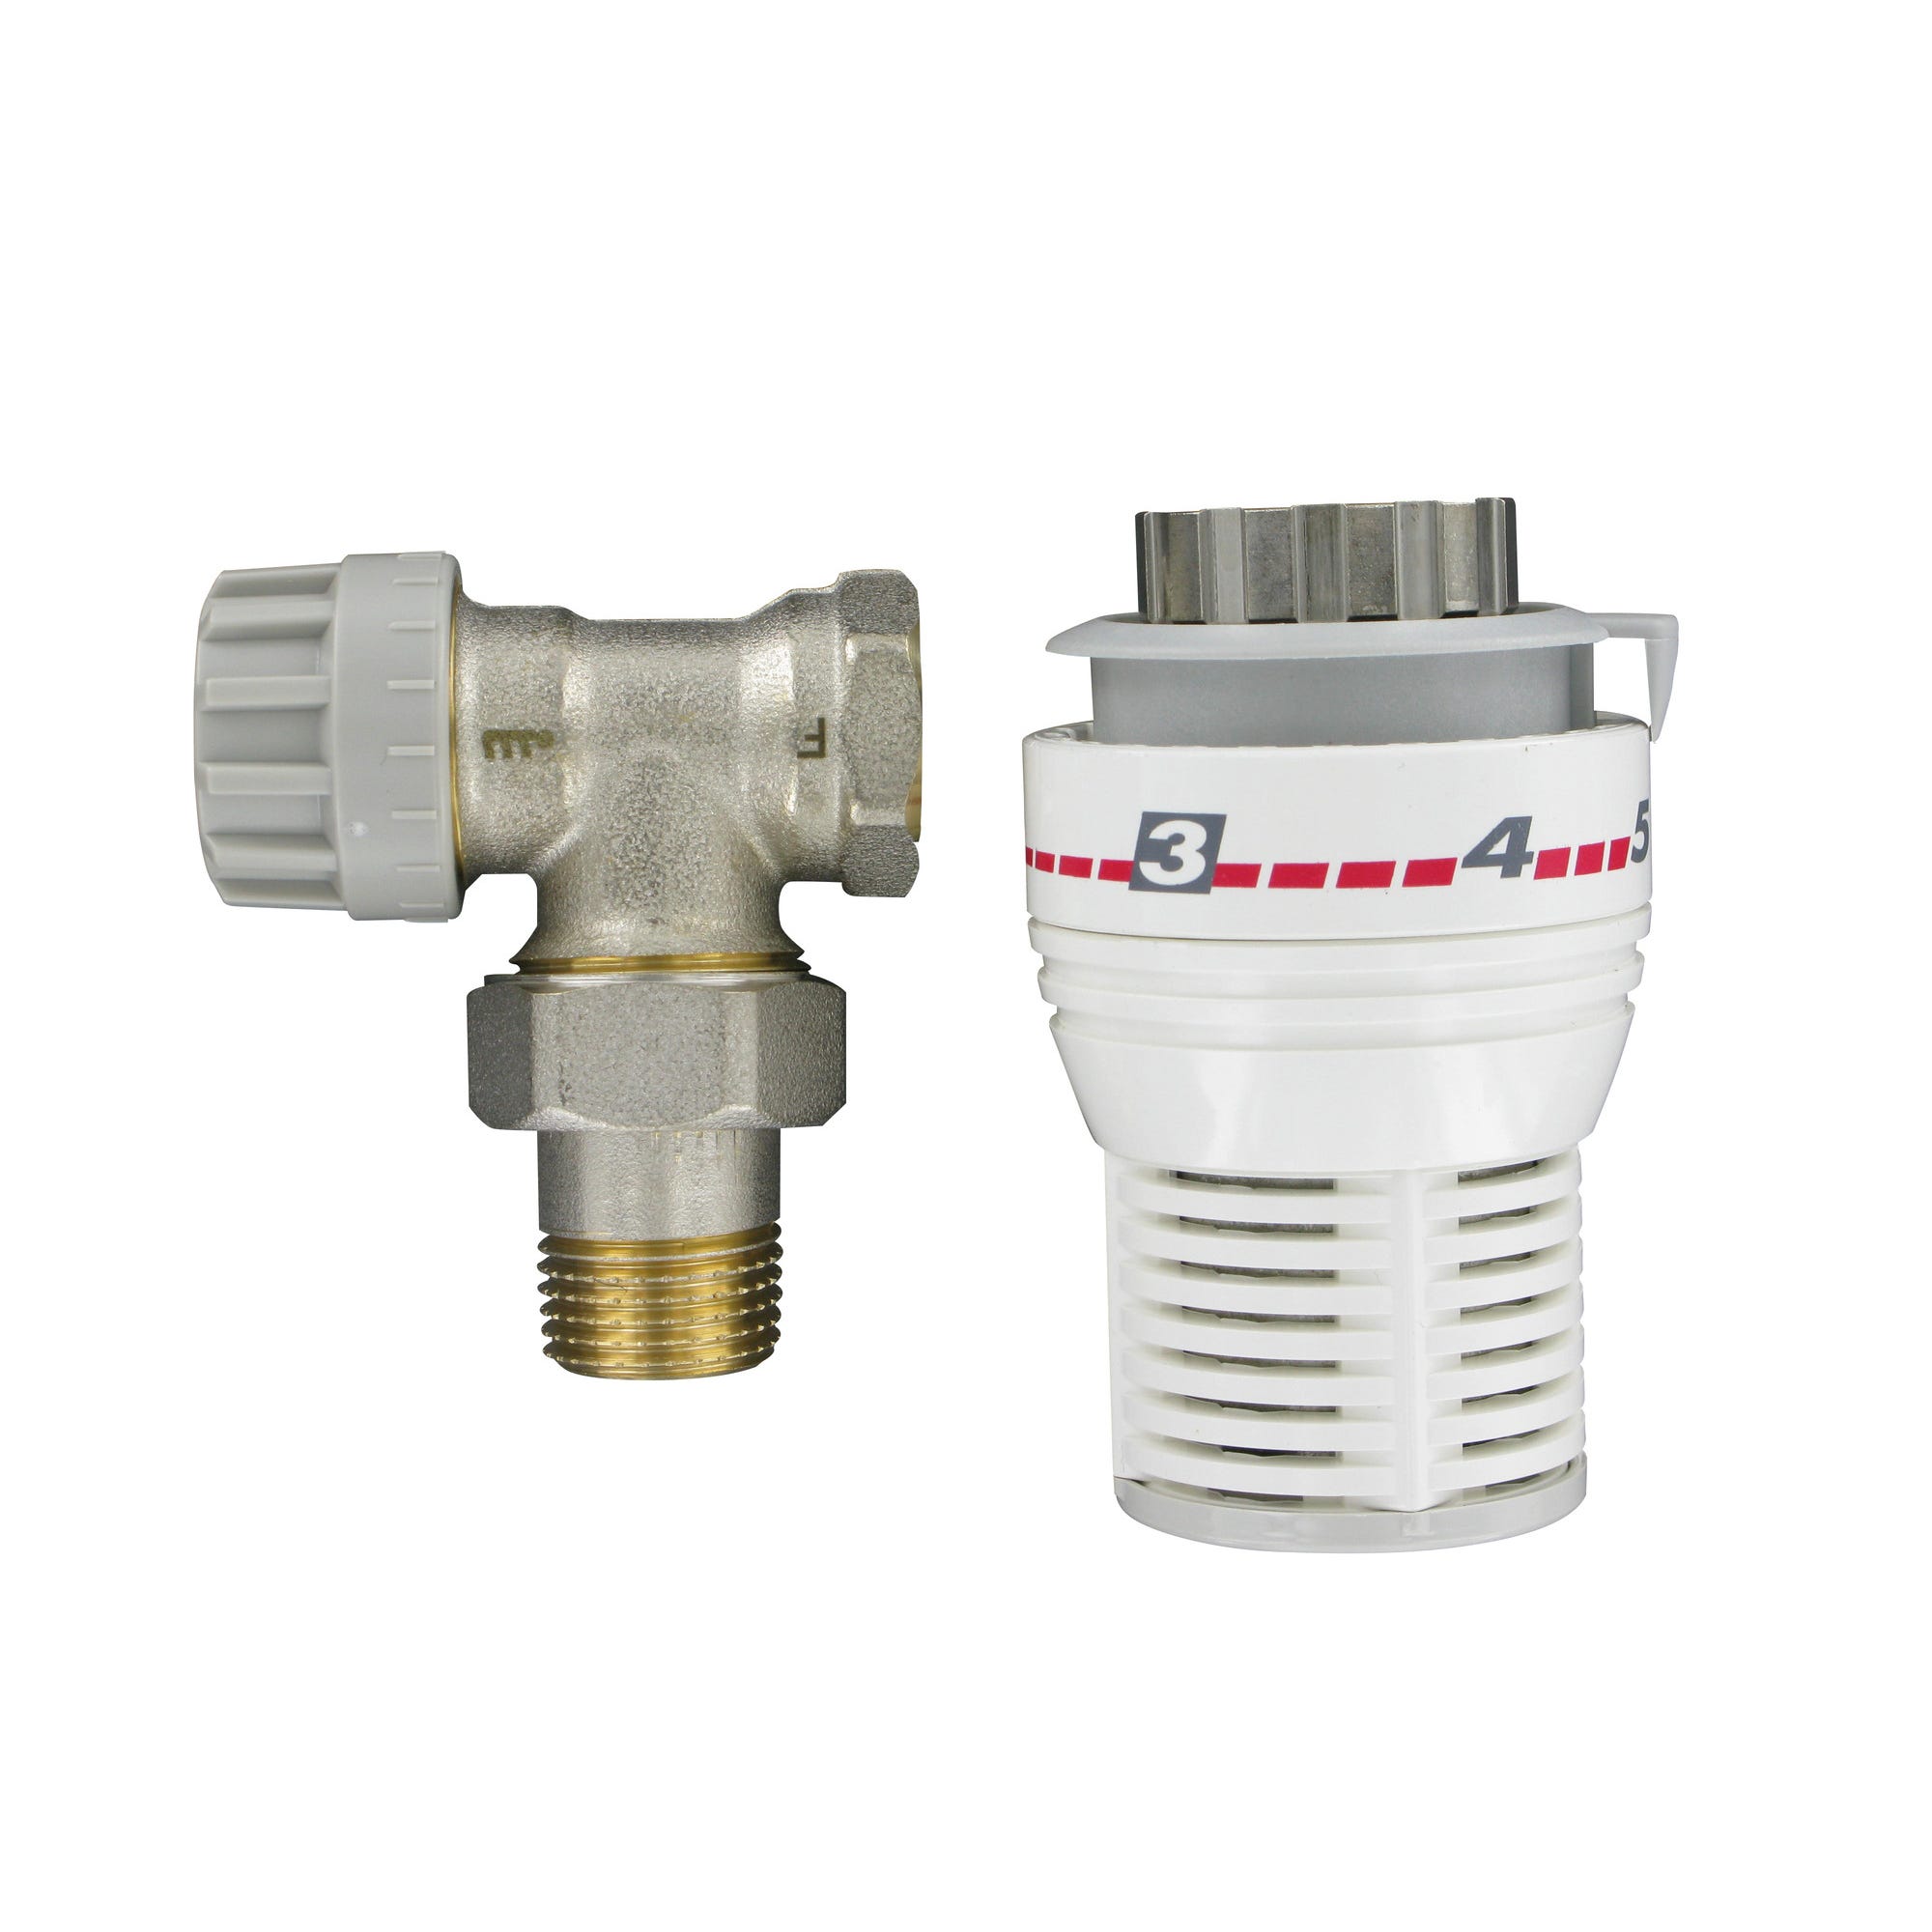 Kit robinet thermostatique équerre 15 x 21 (1/2") - COMAP 0